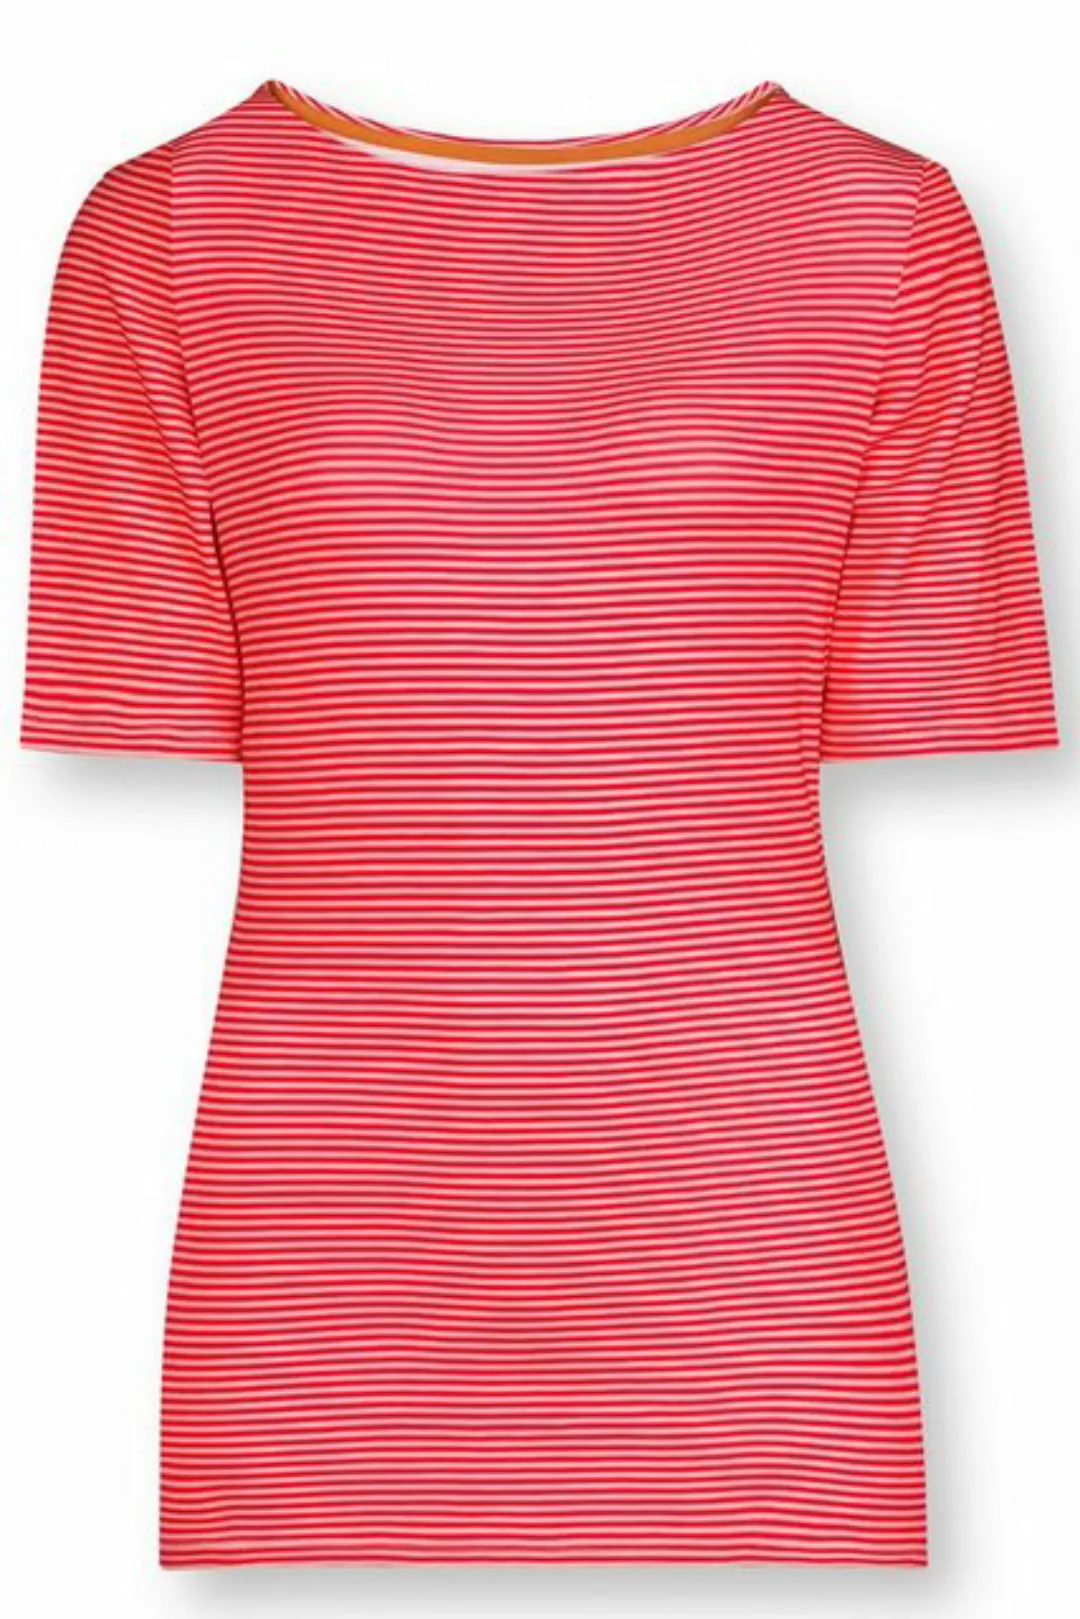 PiP Studio Kurzarmshirt Tjessy Little Sumo Stripe Top Short Sleeve 51512242 günstig online kaufen